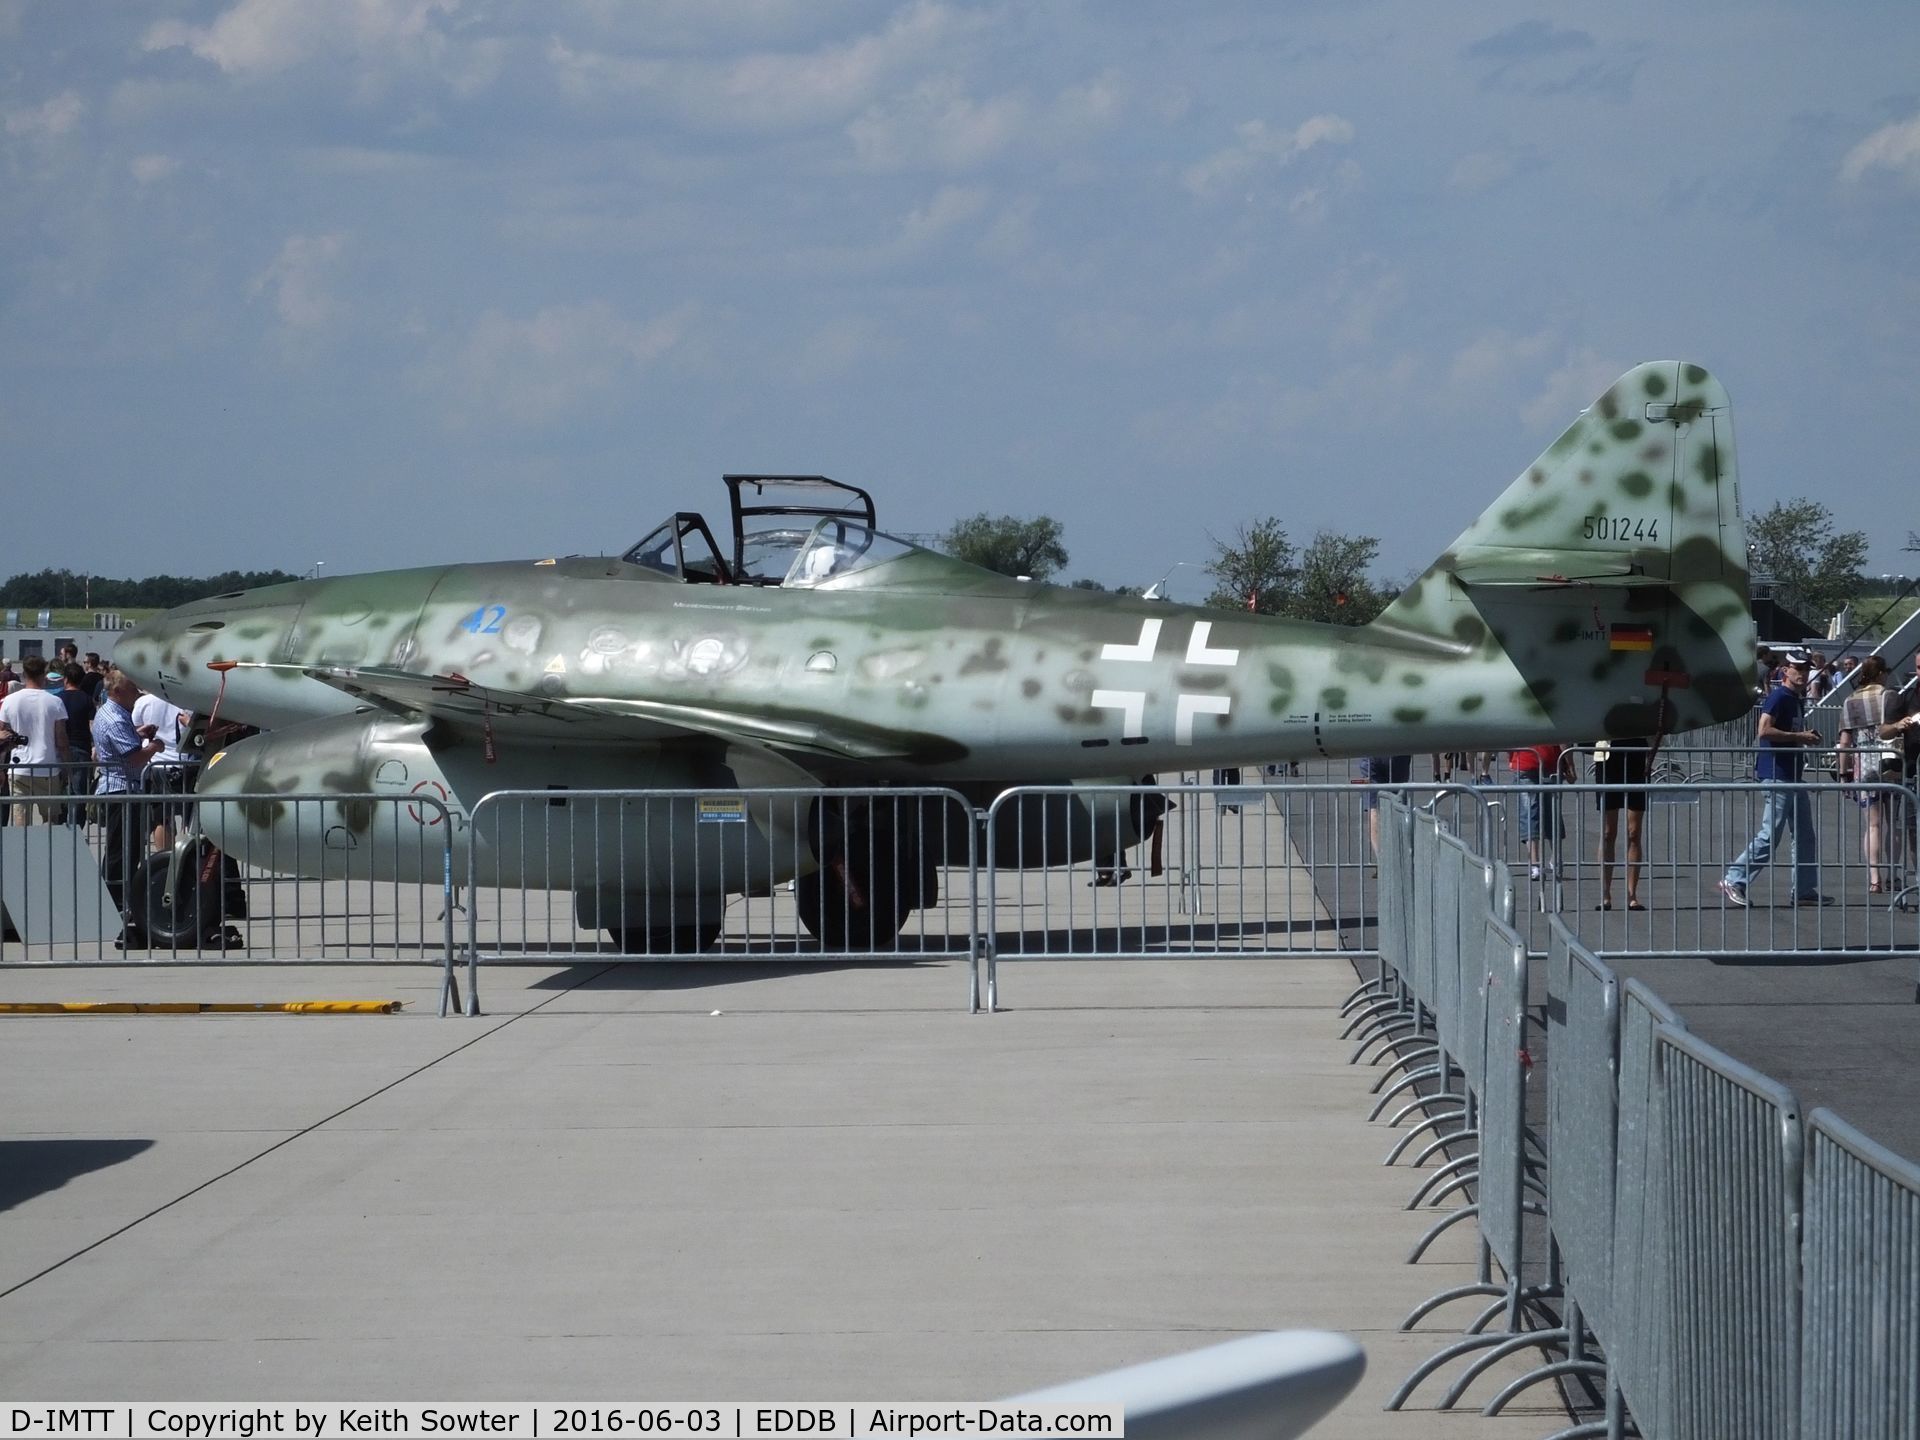 D-IMTT, 2005 Messerschmitt Me-262A-1C Schwalbe Replica C/N 501244, At the Berlin ILA Airshow 2016